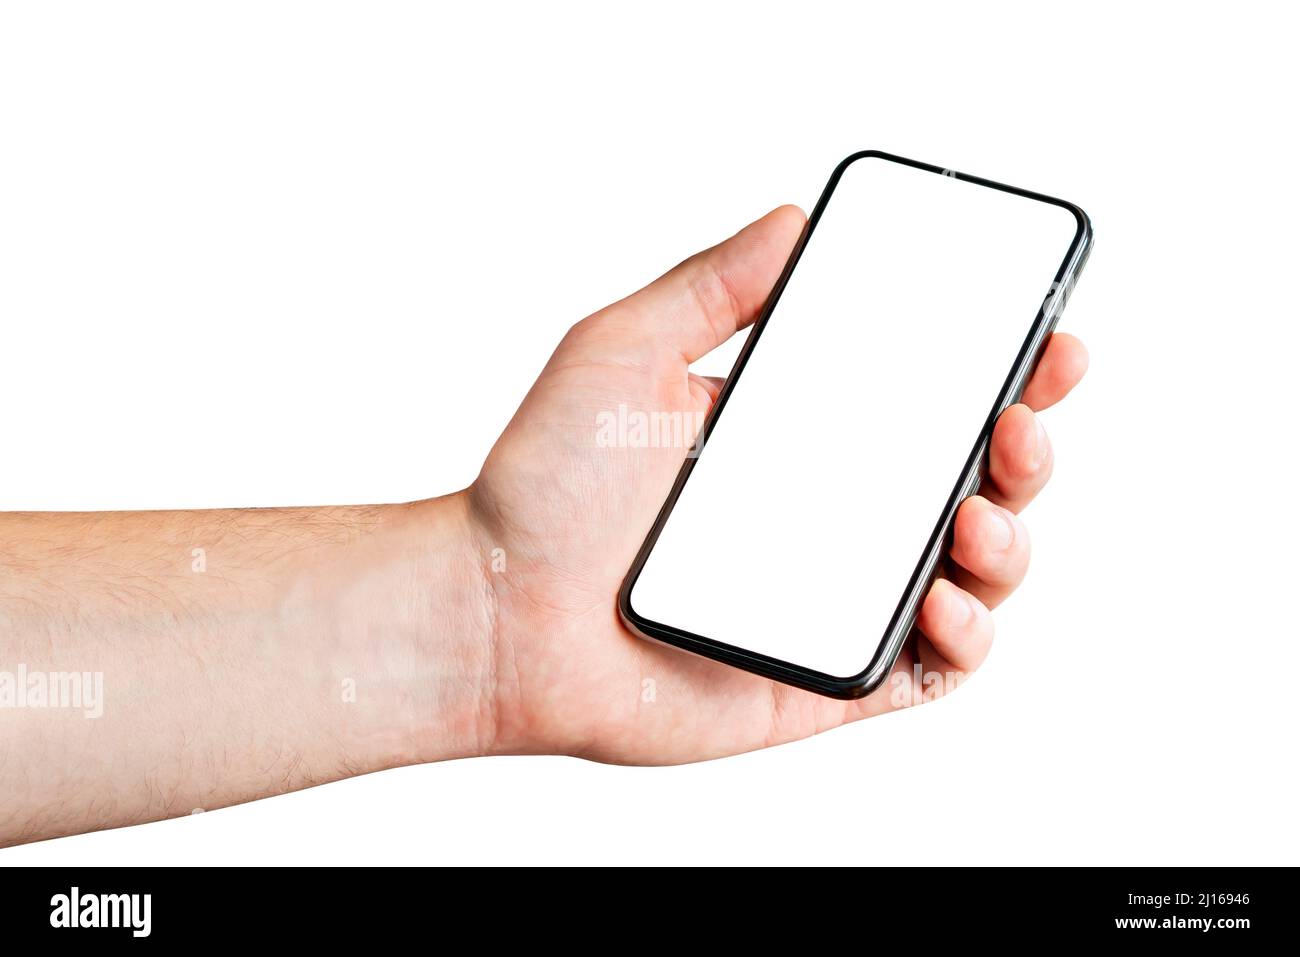 Telefono in mano, sfondo bianco. Uomo con cellulare isolato. Schermo vuoto per mockup o applicazione. Display vuoto per il design dell'app. Foto Stock